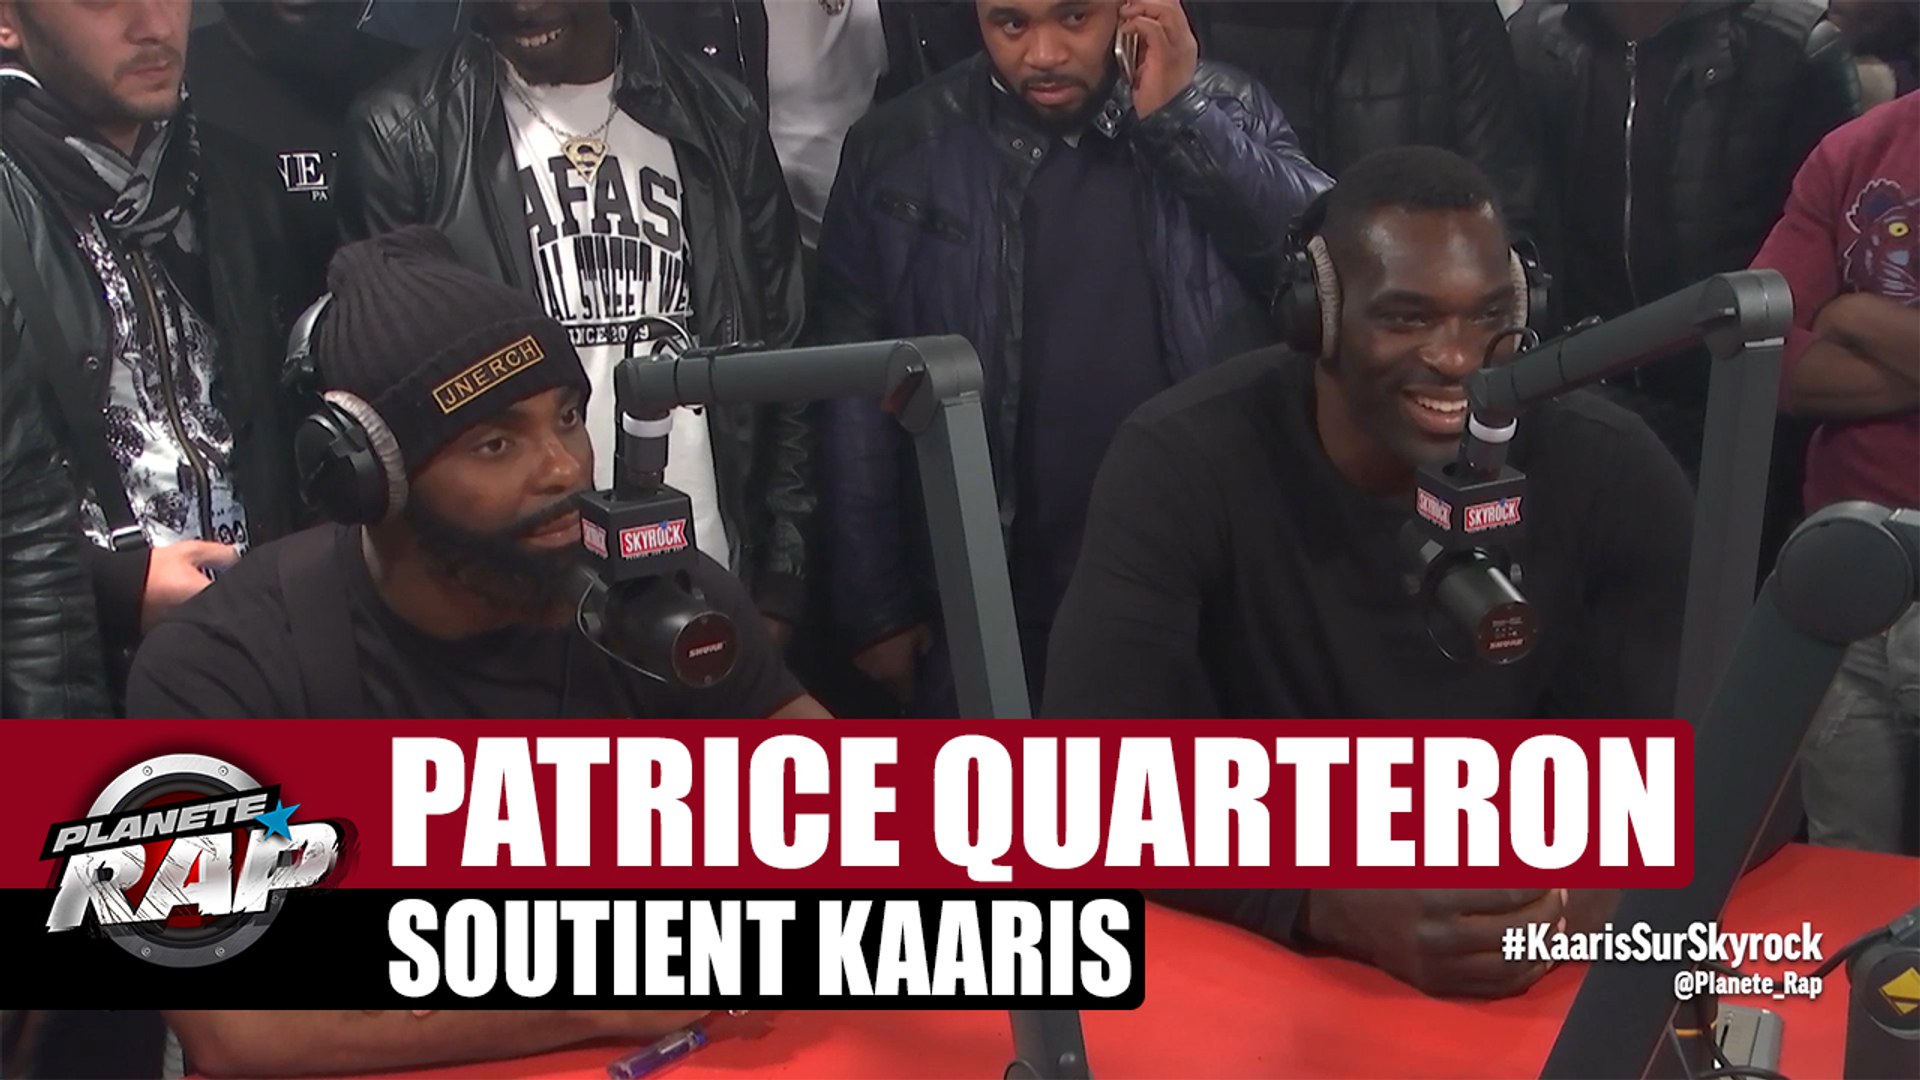 Patrice Quarteron soutient Kaaris #PlanèteRap - Vidéo Dailymotion